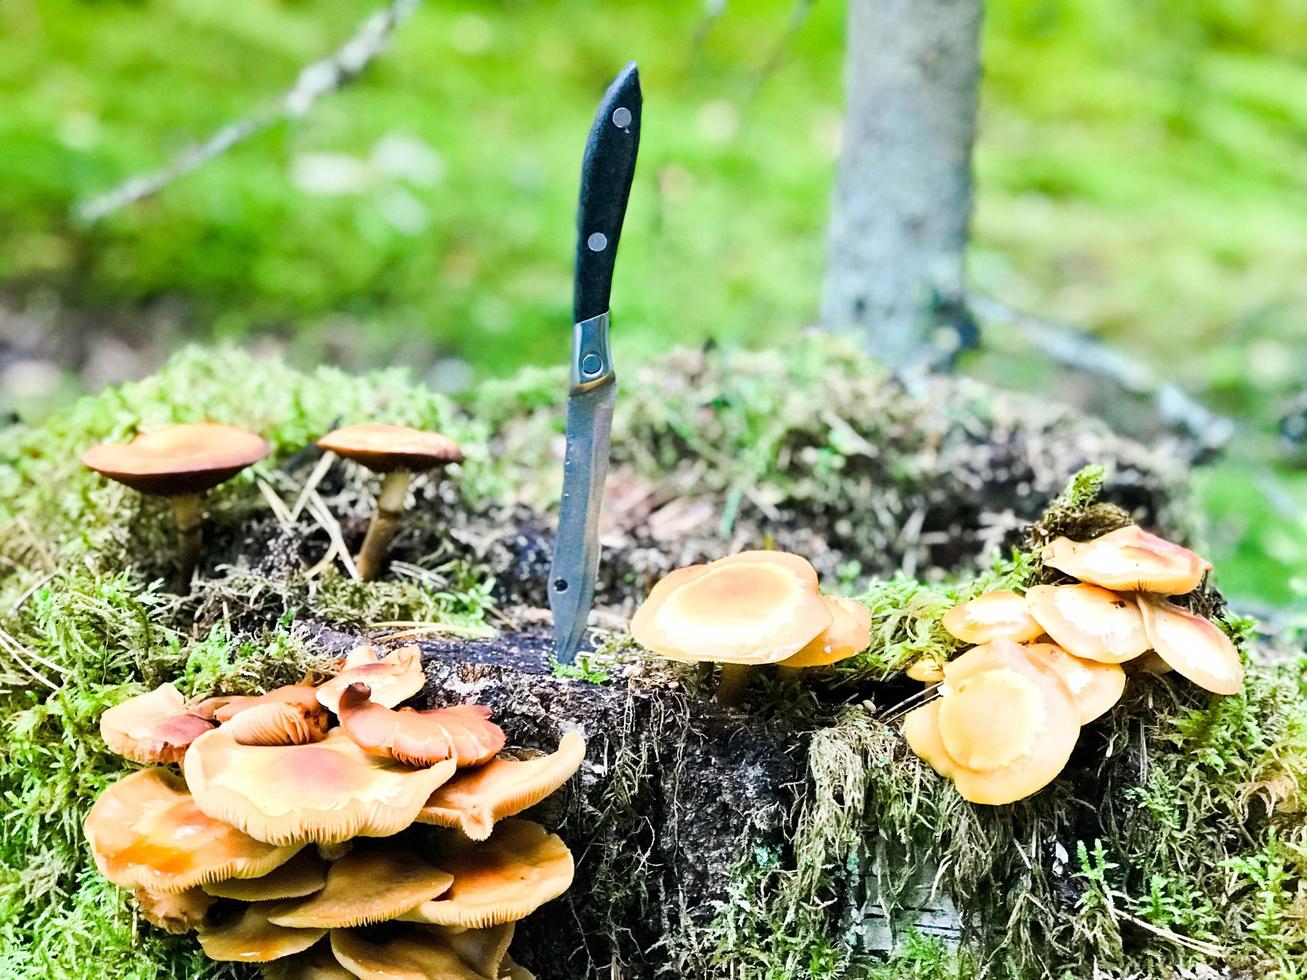 un couteau en métal tranchant est coincé dans une souche recouverte de mousse verte avec de délicieux champignons comestibles dans la forêt sur fond d'arbres. concept cueillette de champignons, dons de la nature photo